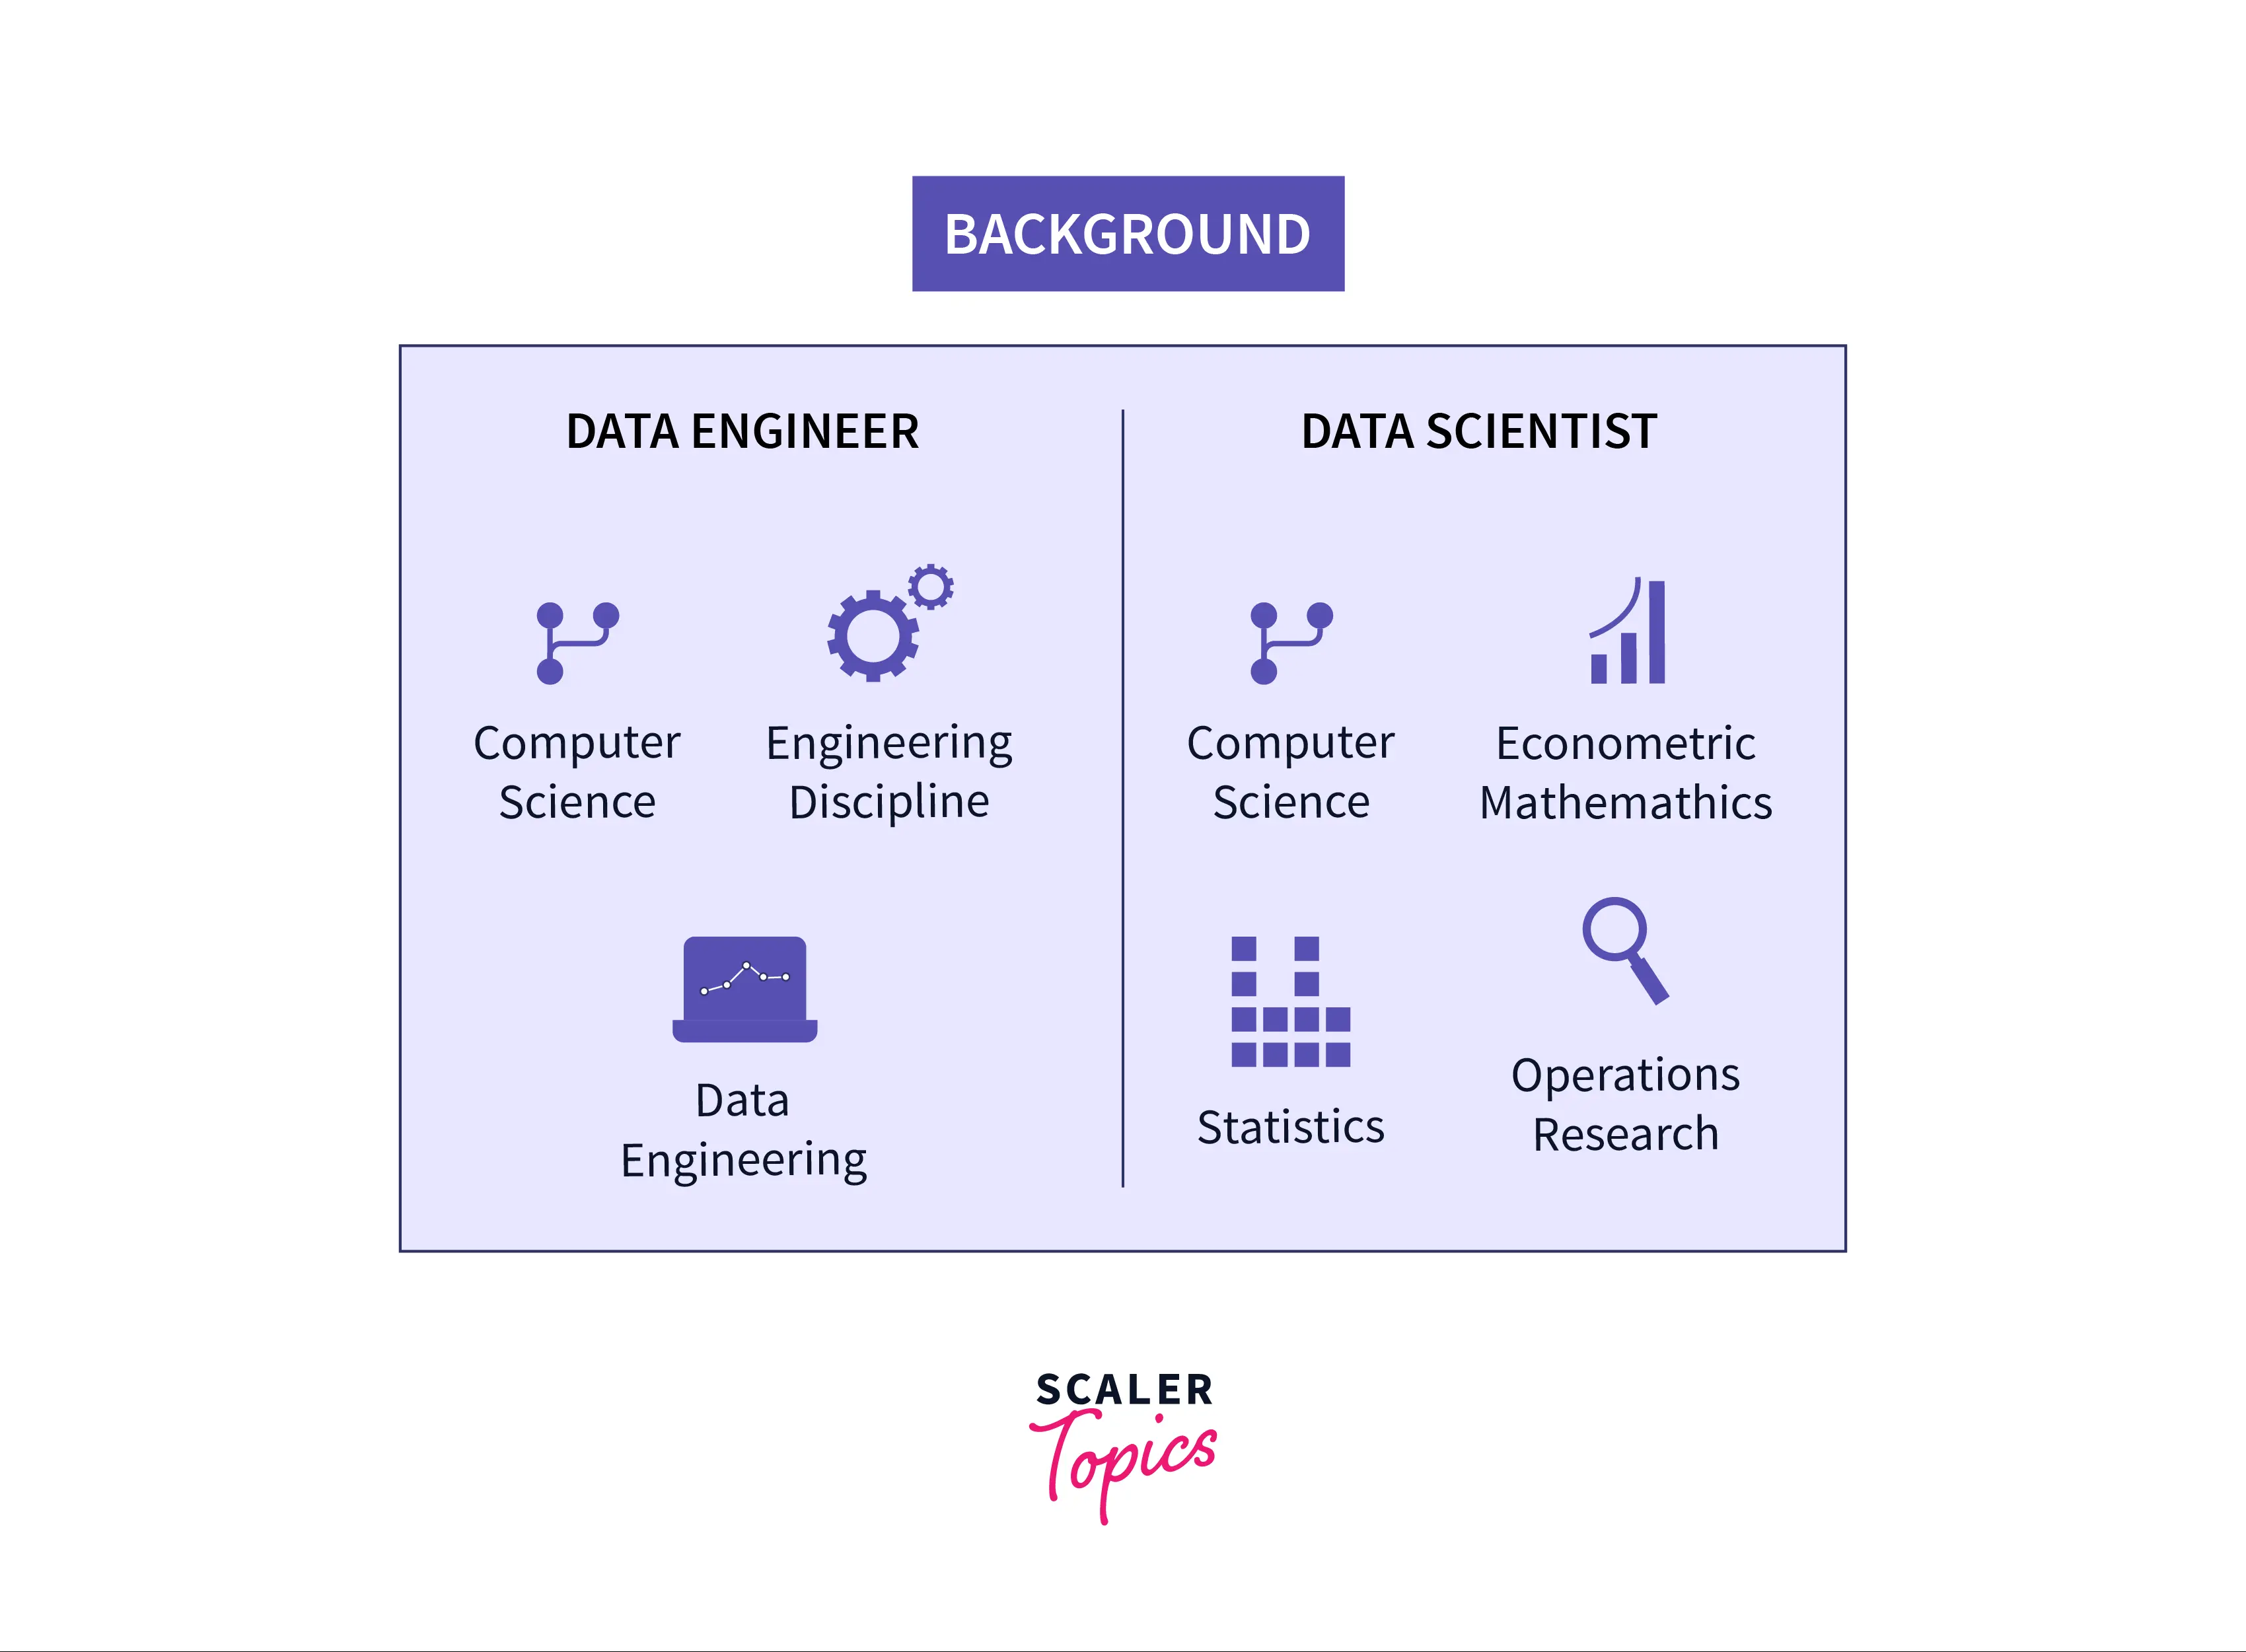 Data Engineer vs Data Scientist background